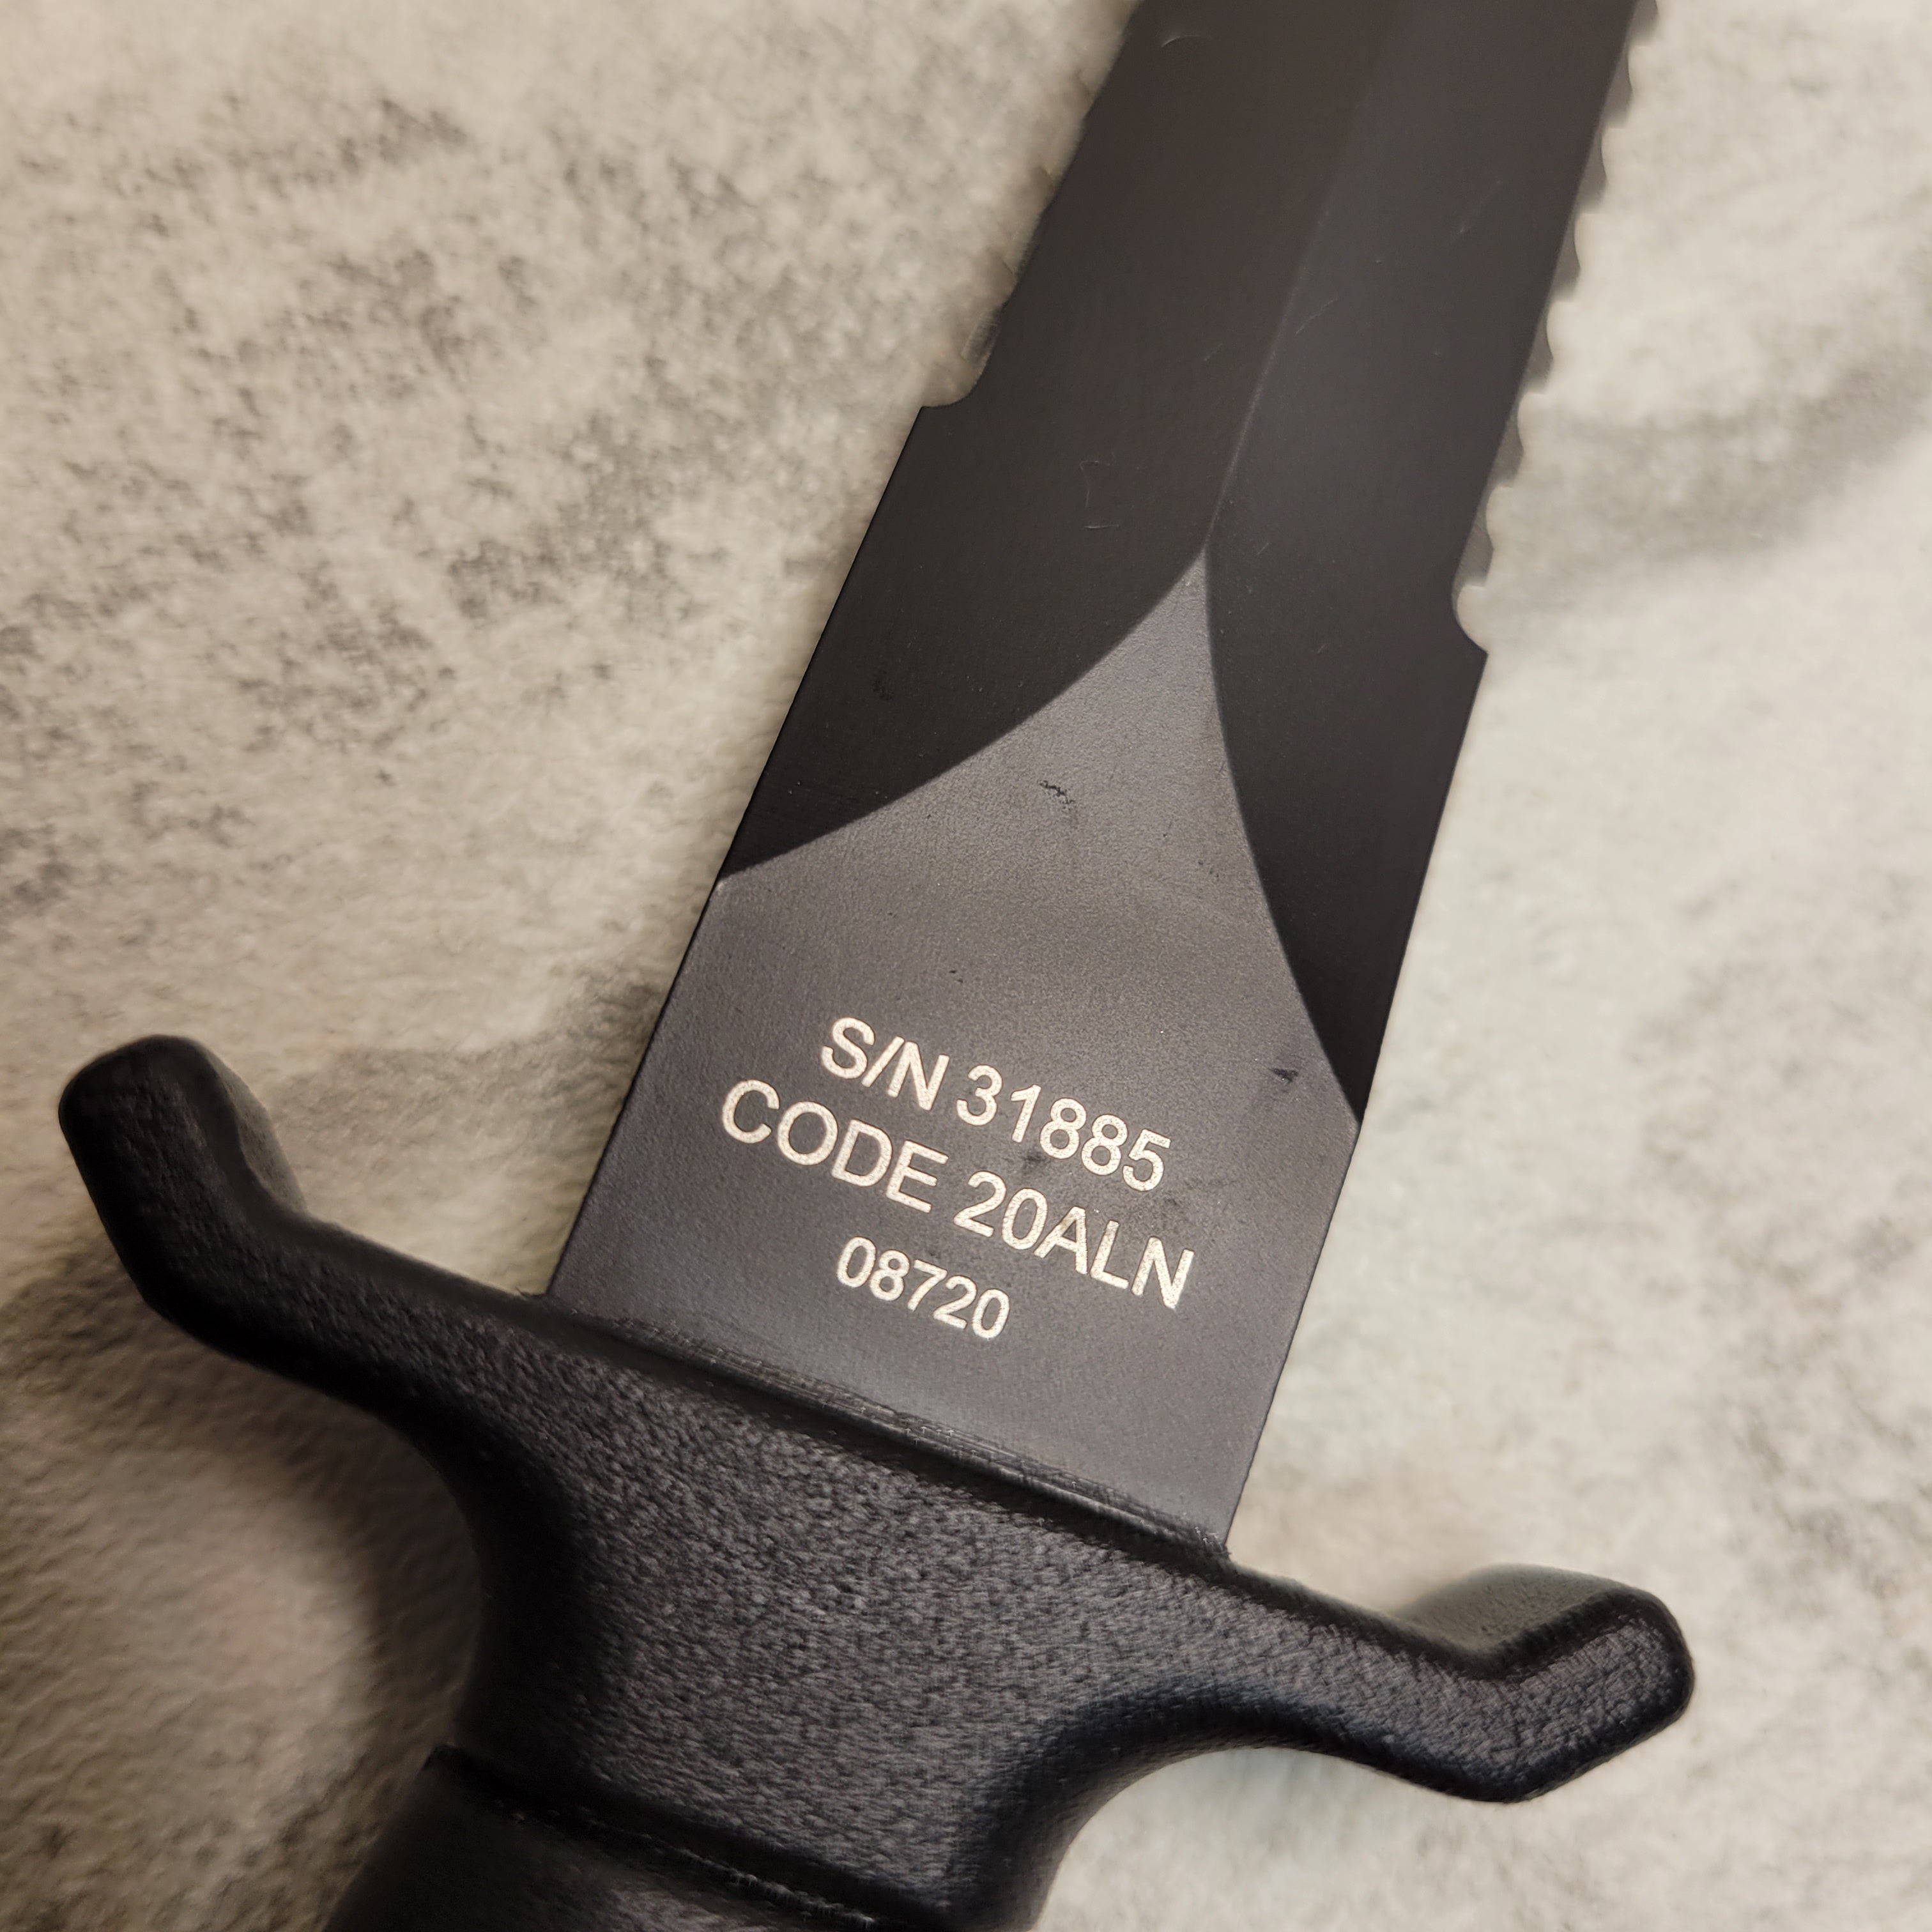 Gerber Mark II Knife S/N 31885 Code 20ALN 08720 (7859494158574)